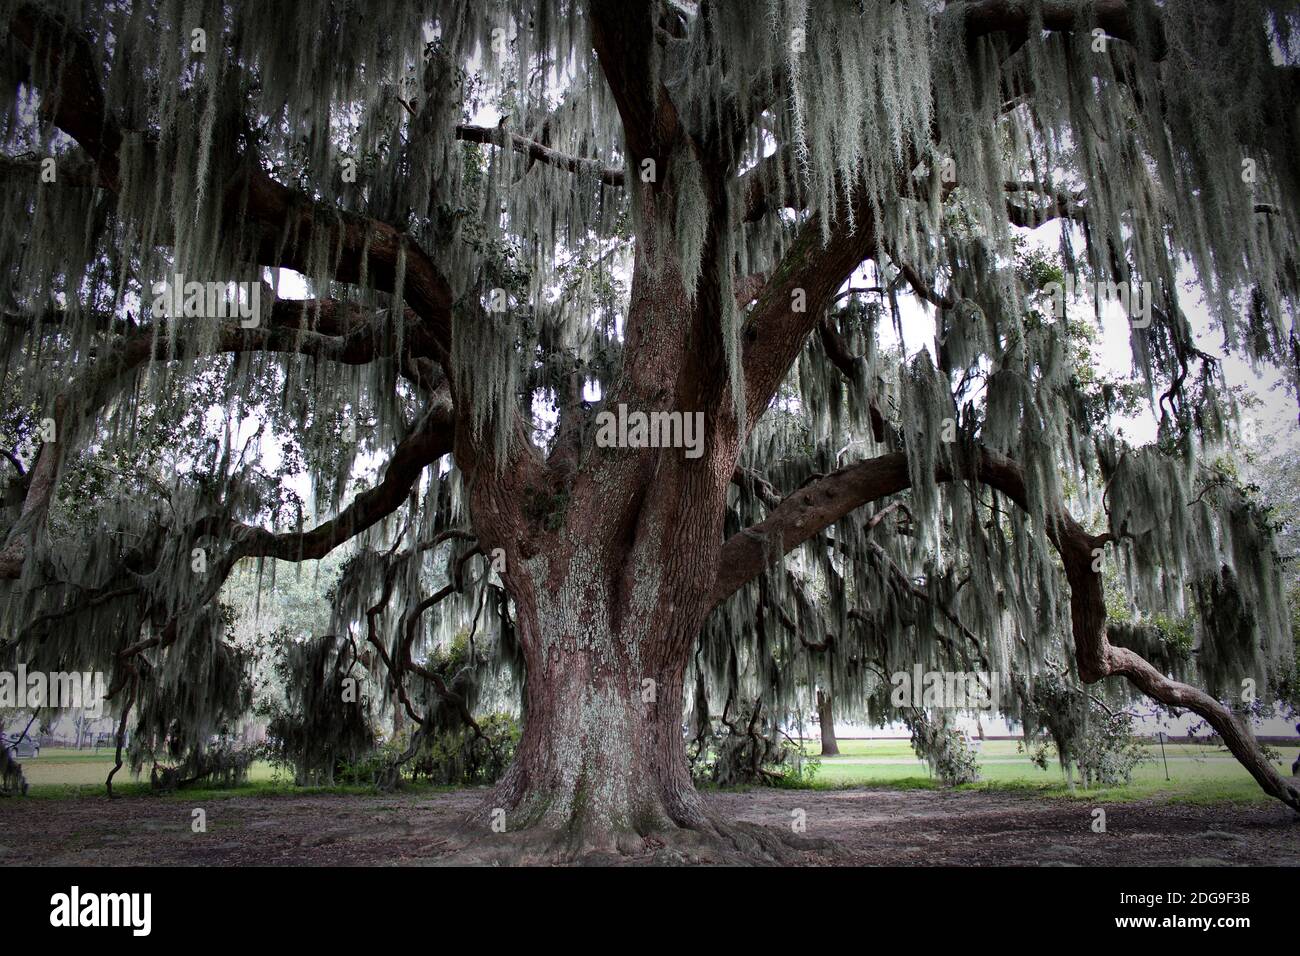 cet ancien chêne s'est entouré au fil des siècles Avec d'énormes branches drapées de mousse espagnole Banque D'Images